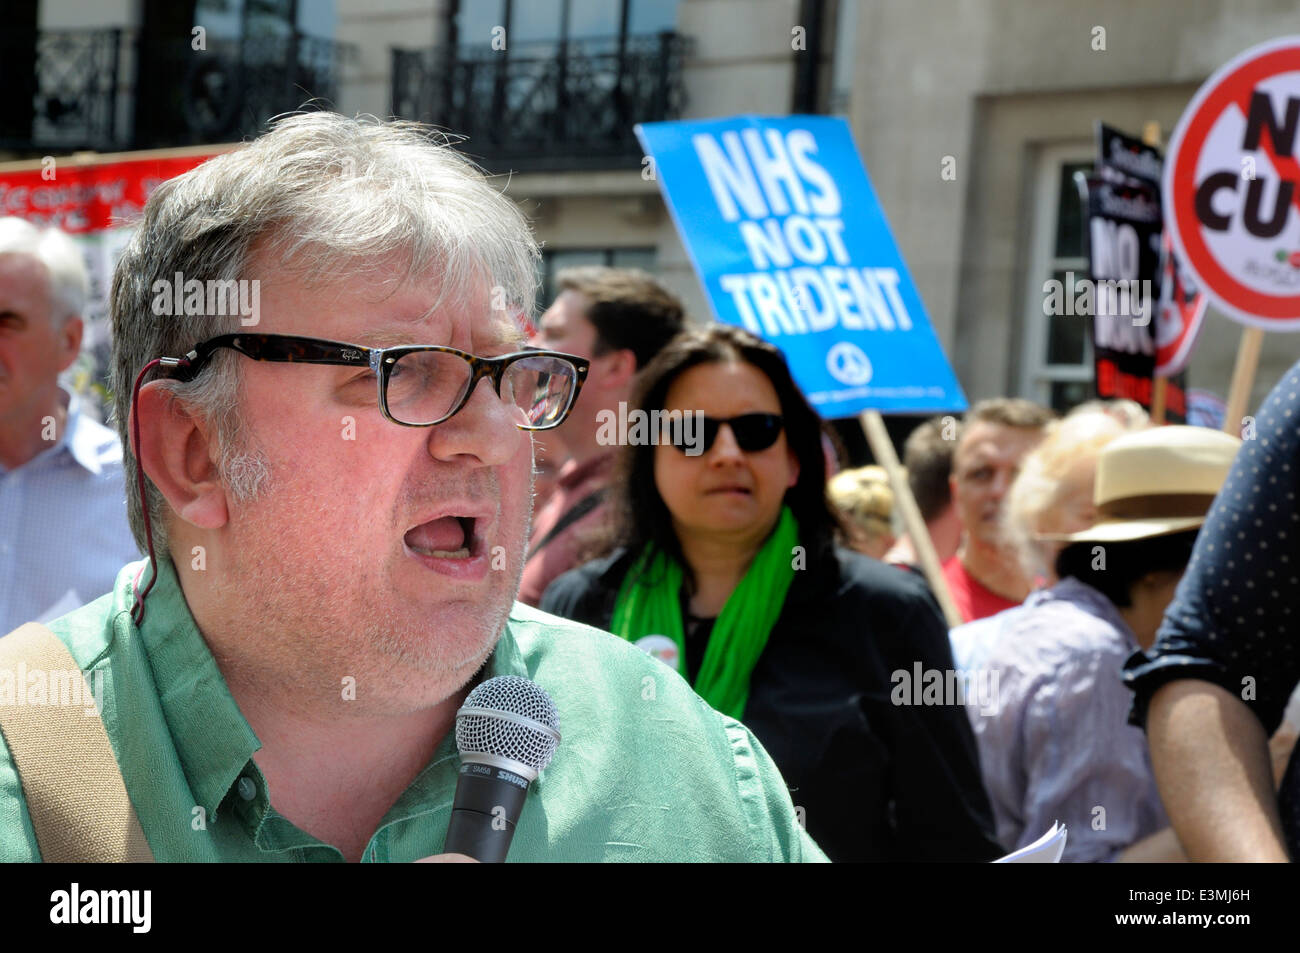 Sean McGovern - co-président du TUC's comité de travailleurs handicapés - en dehors de la BBC, le 21 juin 2014 Banque D'Images